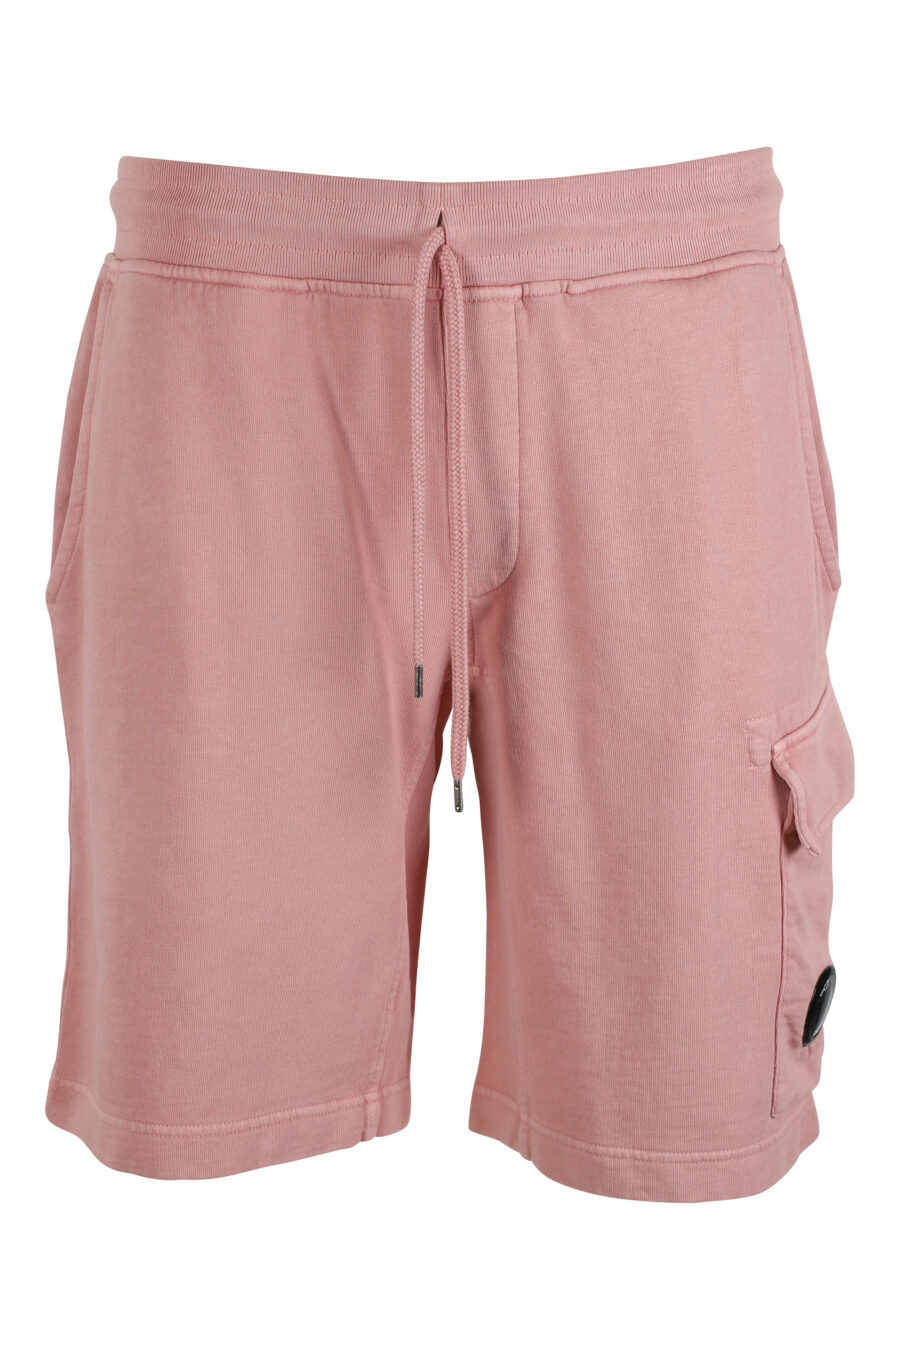 Pantalón de chándal corto rosa estilo cargo con minilogo circular - IMG 9517